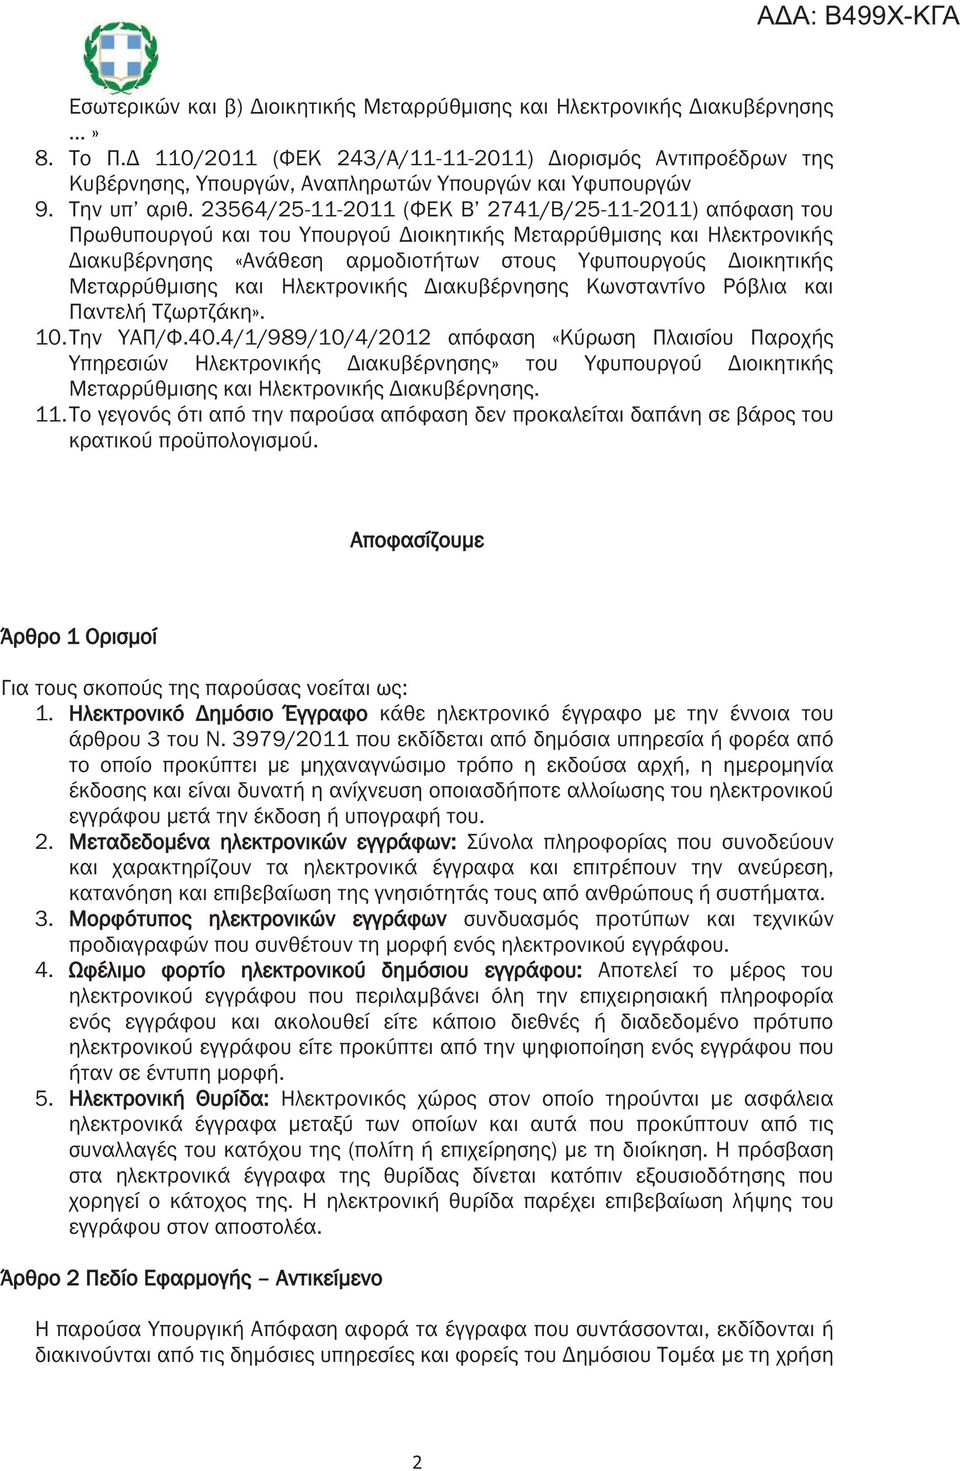 23564/25-11-2011 (ΦΕΚ Β 2741/Β/25-11-2011) απόφαση του Πρωθυπουργού και του Υπουργού Διοικητικής Μεταρρύθμισης και Ηλεκτρονικής Διακυβέρνησης «Ανάθεση αρμοδιοτήτων στους Υφυπουργούς Διοικητικής